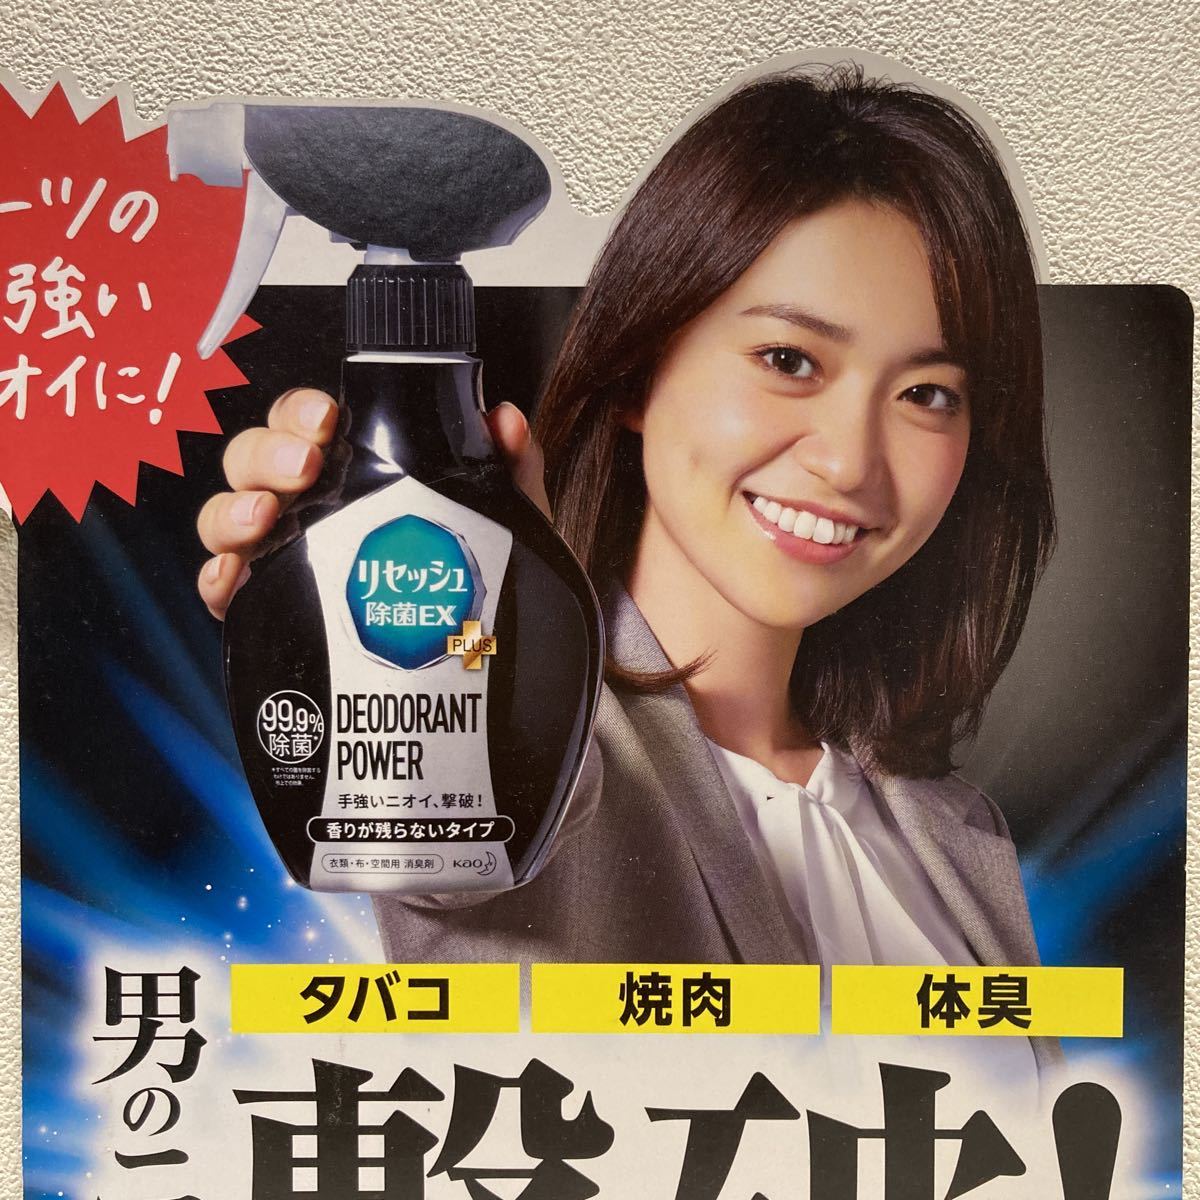 Yuko Oshima Resesh Promotion Pop 26cm x 23cm